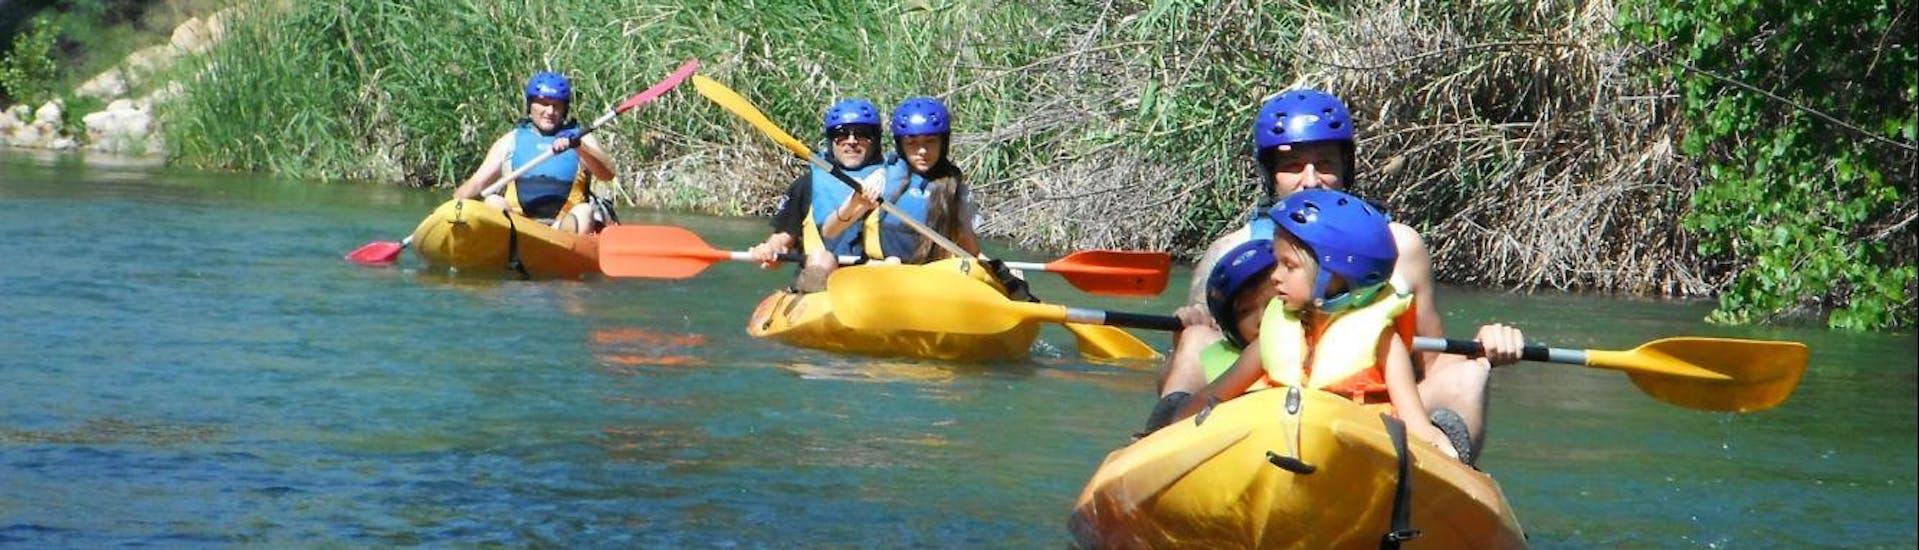 Participantes bajando en canoa el río Cabriel en una actividad ofrecida por Cabriel Roc.